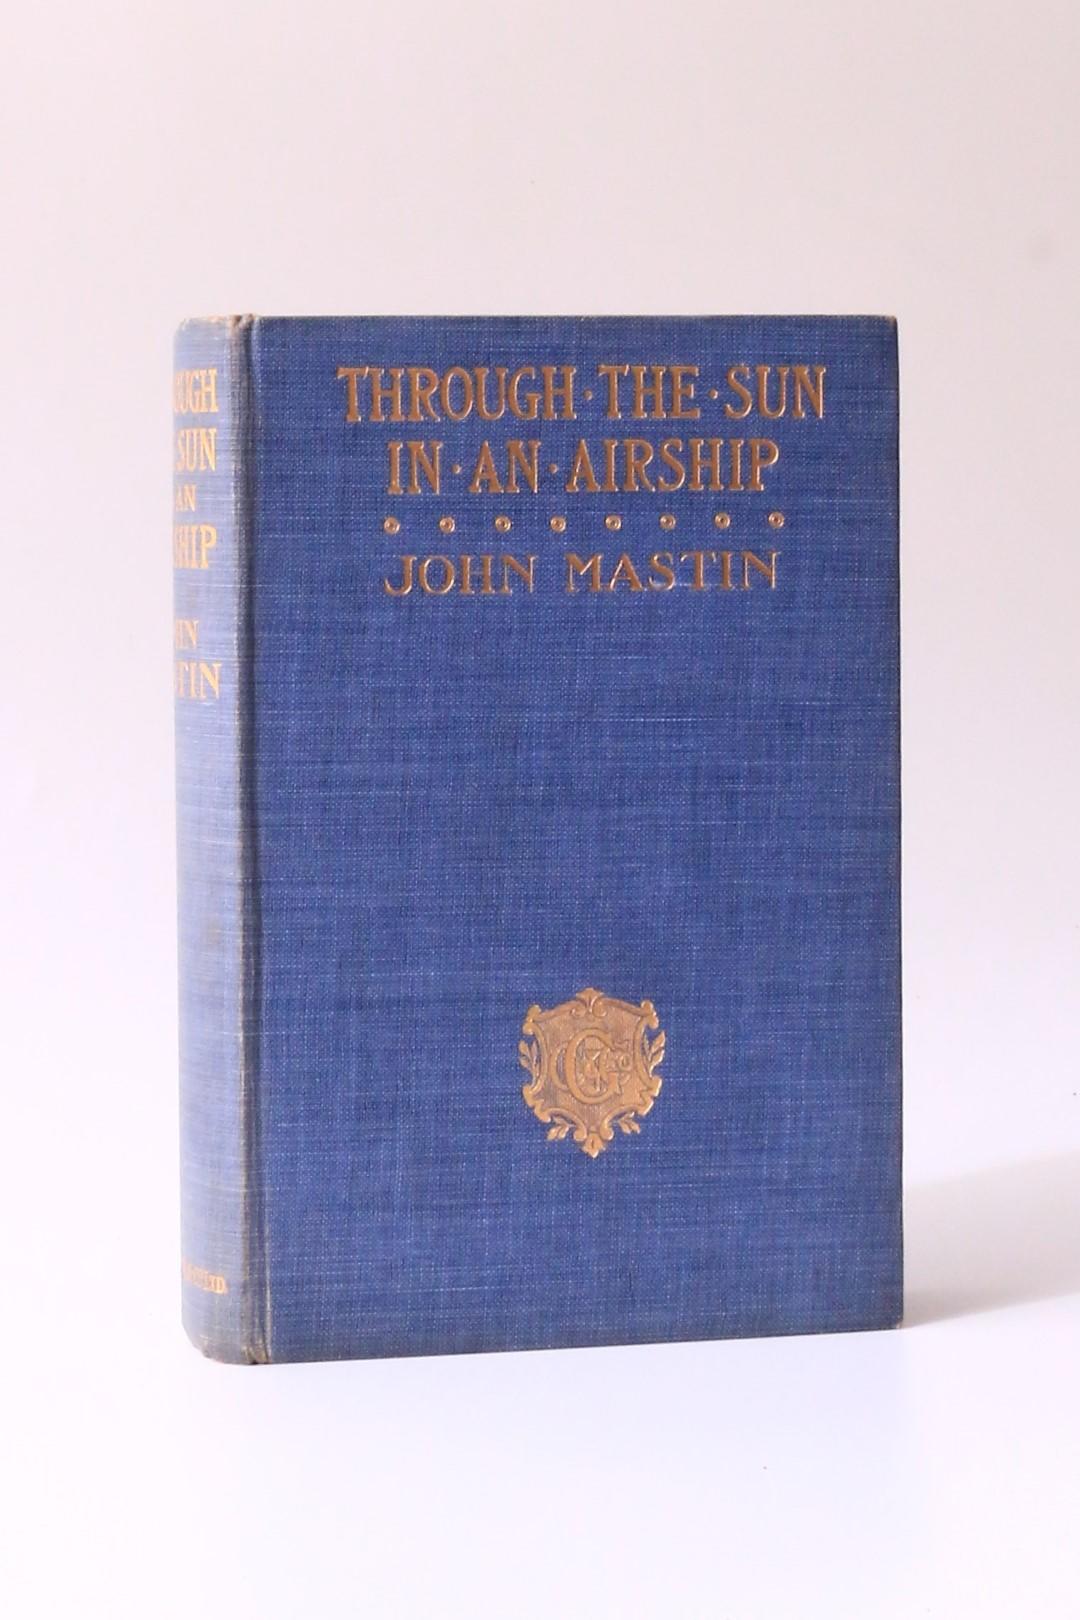 John Mastin - Through the Sun in an Airship - Charles Griffin, n.d. [1909], First Edition.